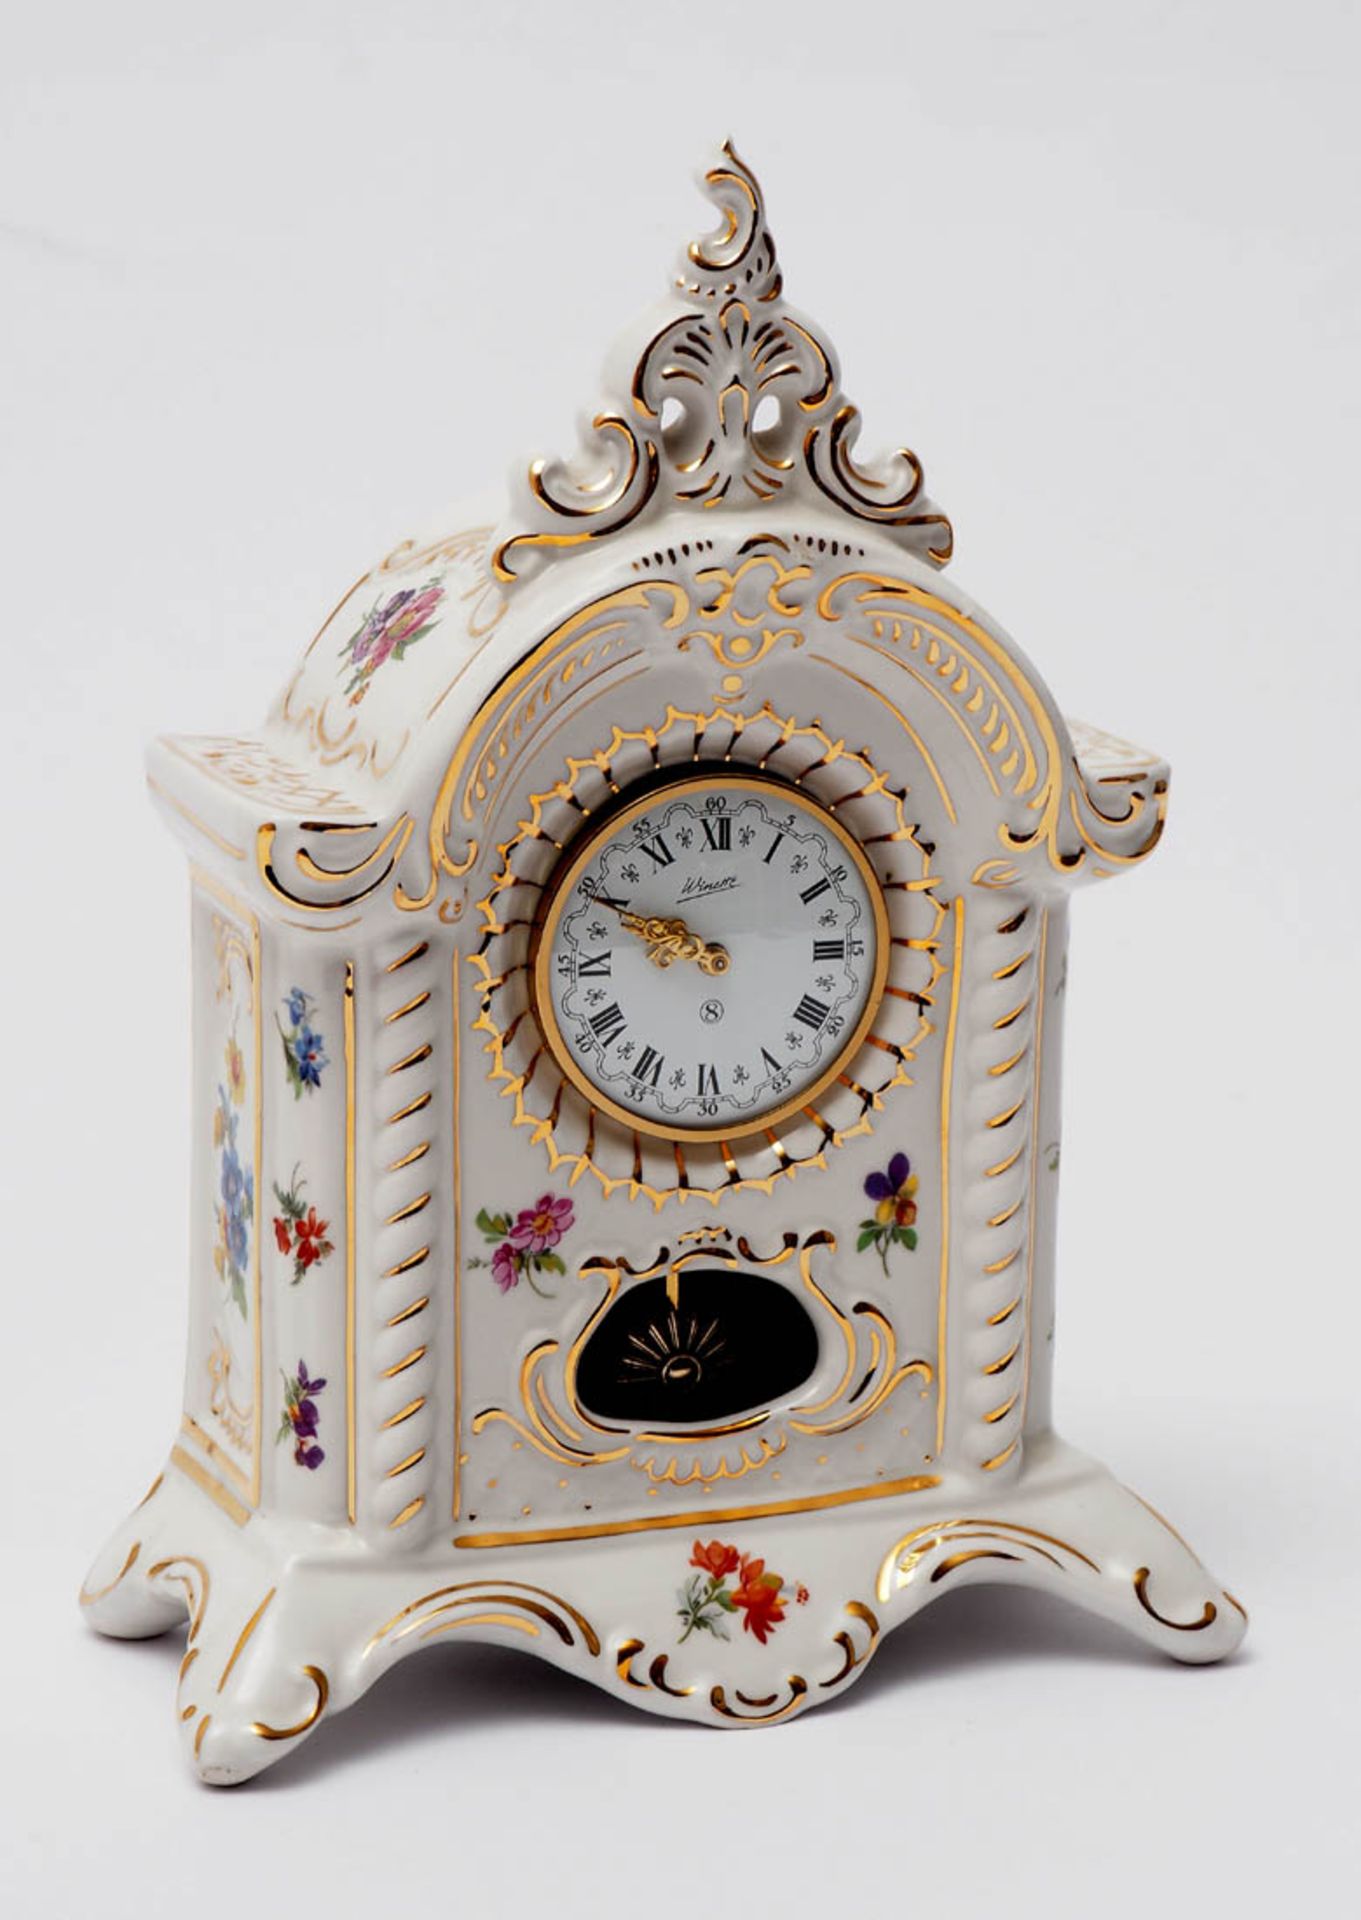 Tischuhr, Dresden Hochrechteckiges Porzellangehäuse mit Bekrönung, polychromem Blütendekor und